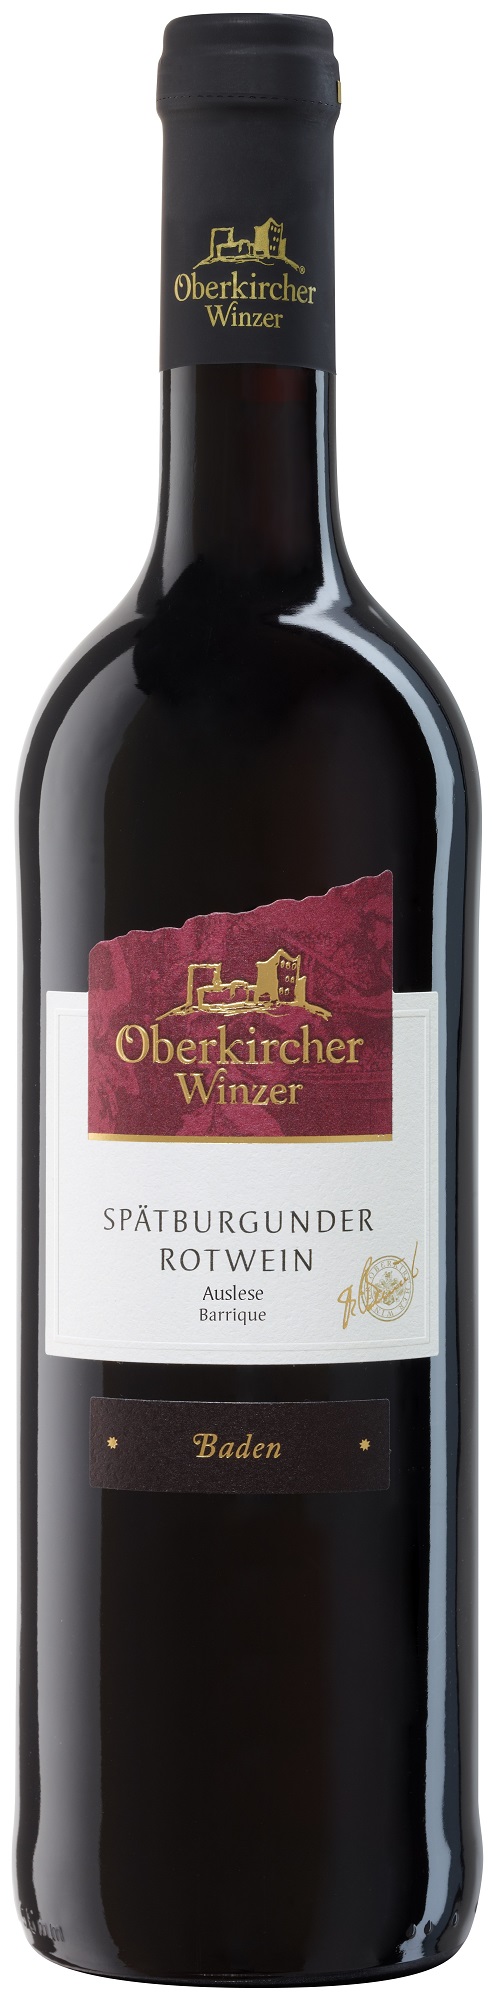 Collection Oberkirch, Spätburgunder Rotwein Auslese -Barrique-